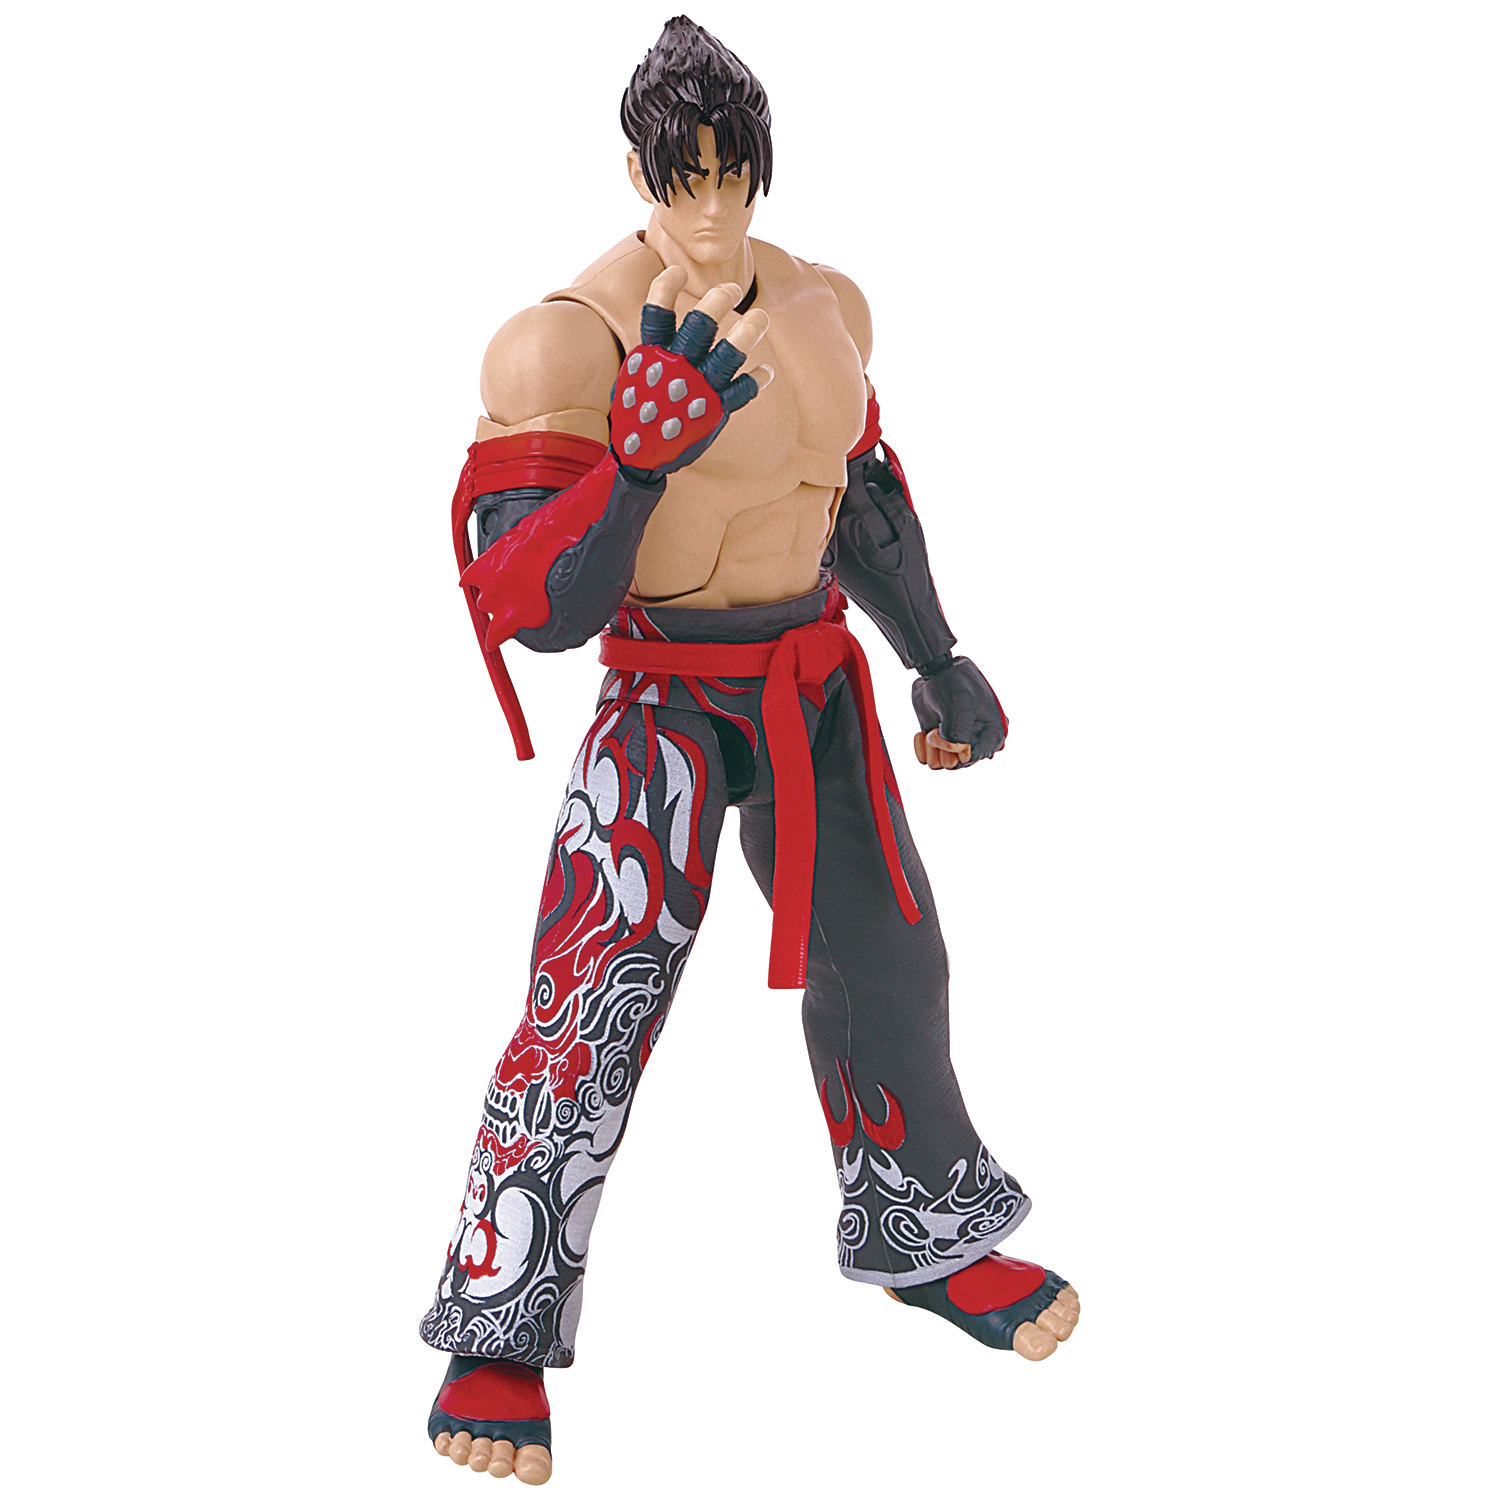 Tekken Gamedimensions Jin Kazama Action Figure